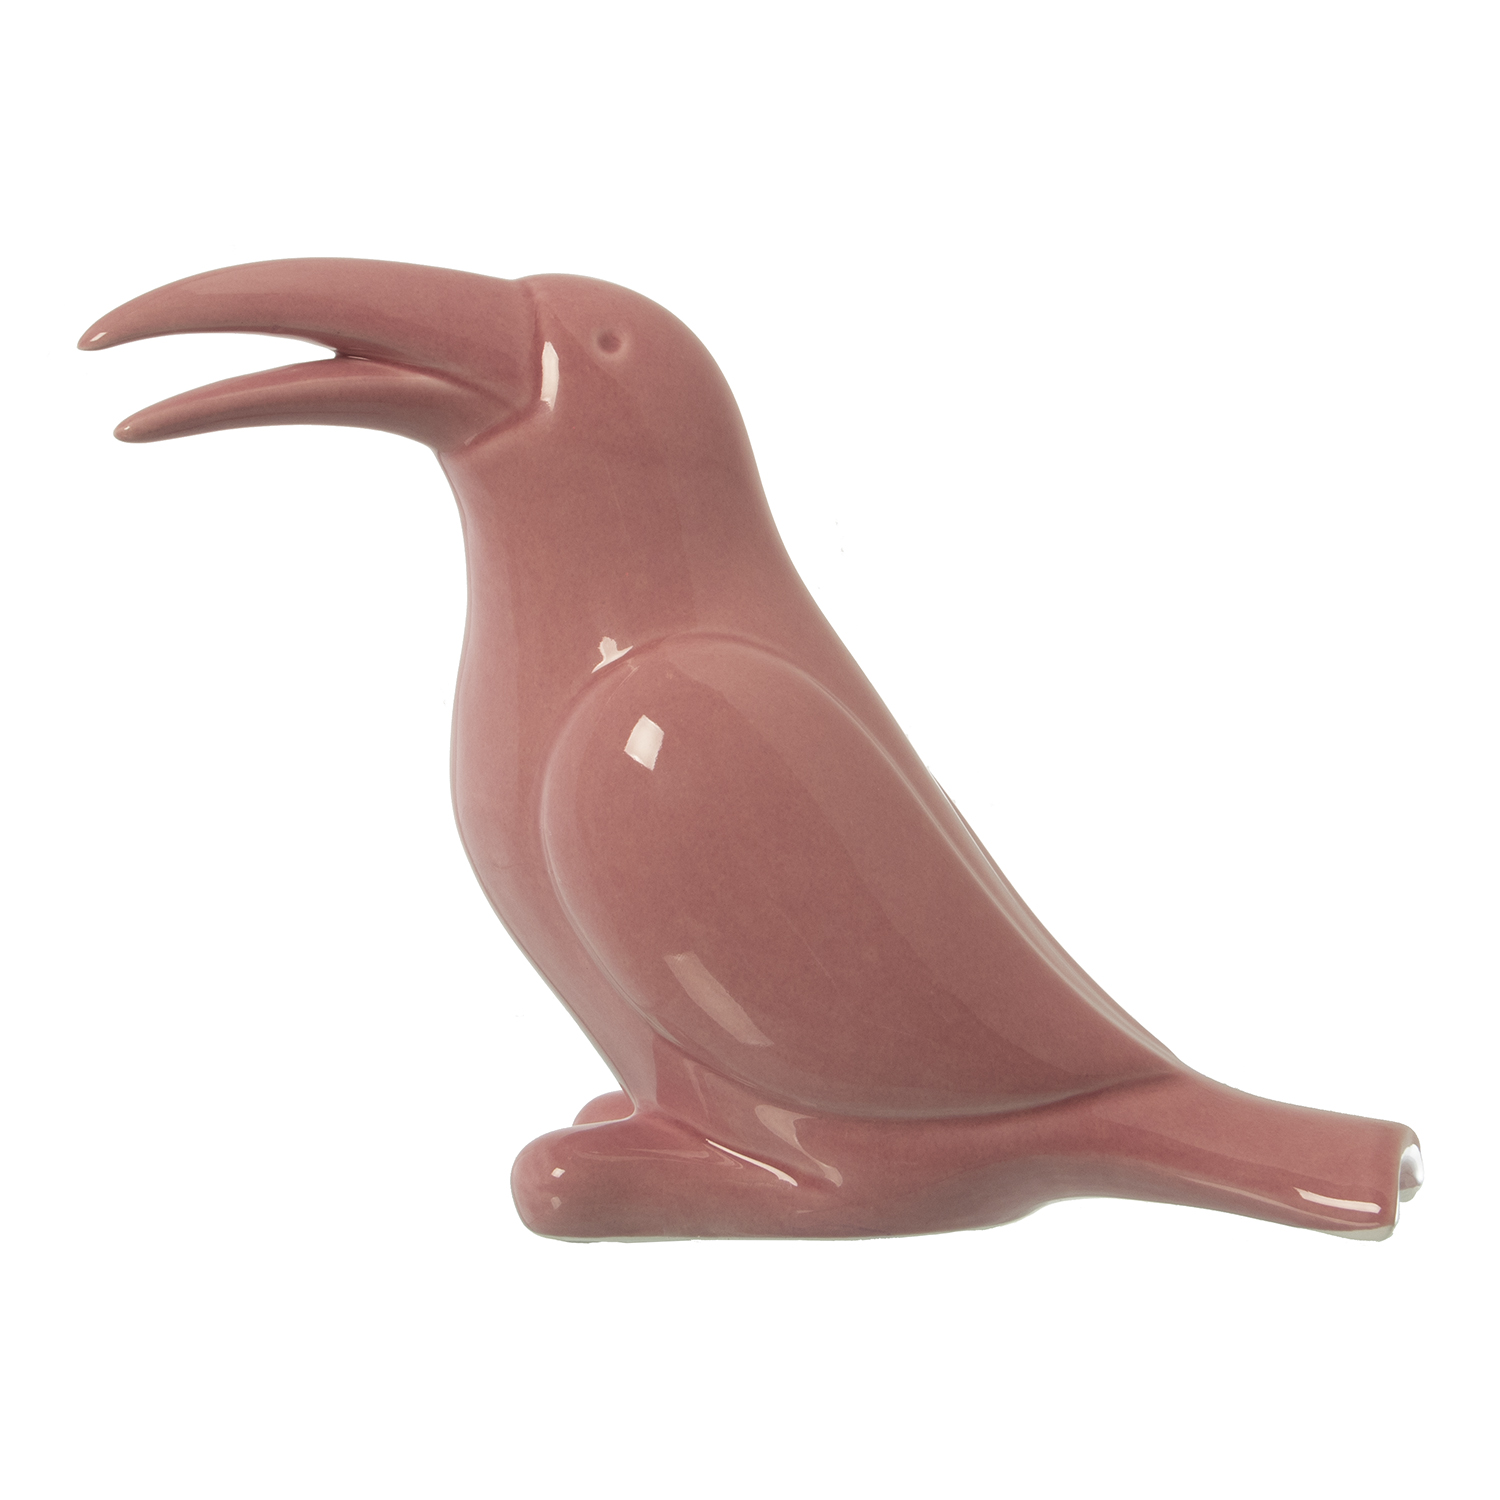 32187-tucan-ceramica-rosa-brillo.gif